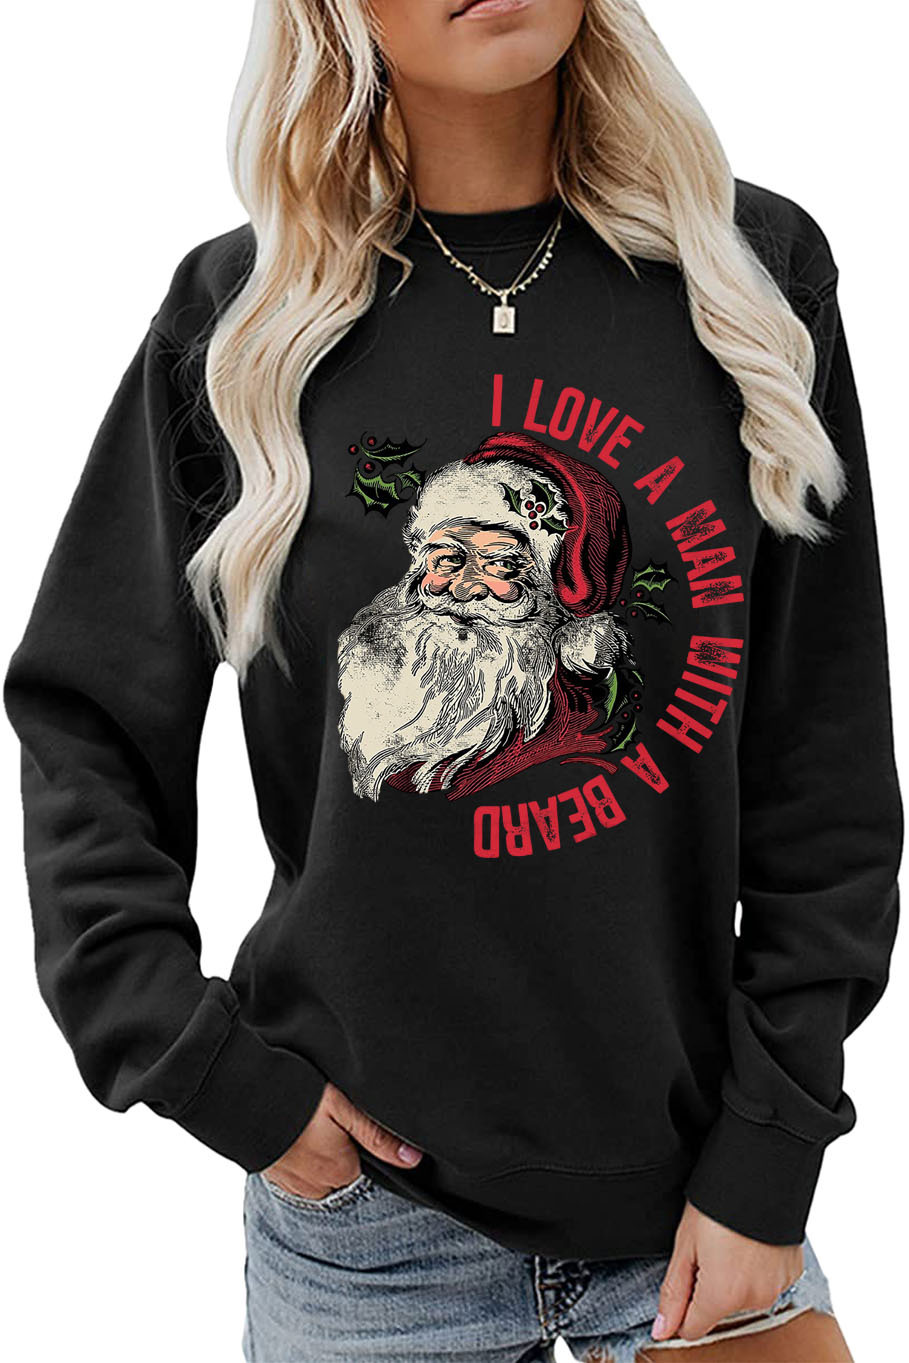 Women's Hoodie Long Sleeve Hoodies & Sweatshirts Printing Christmas Santa Claus Letter display picture 4